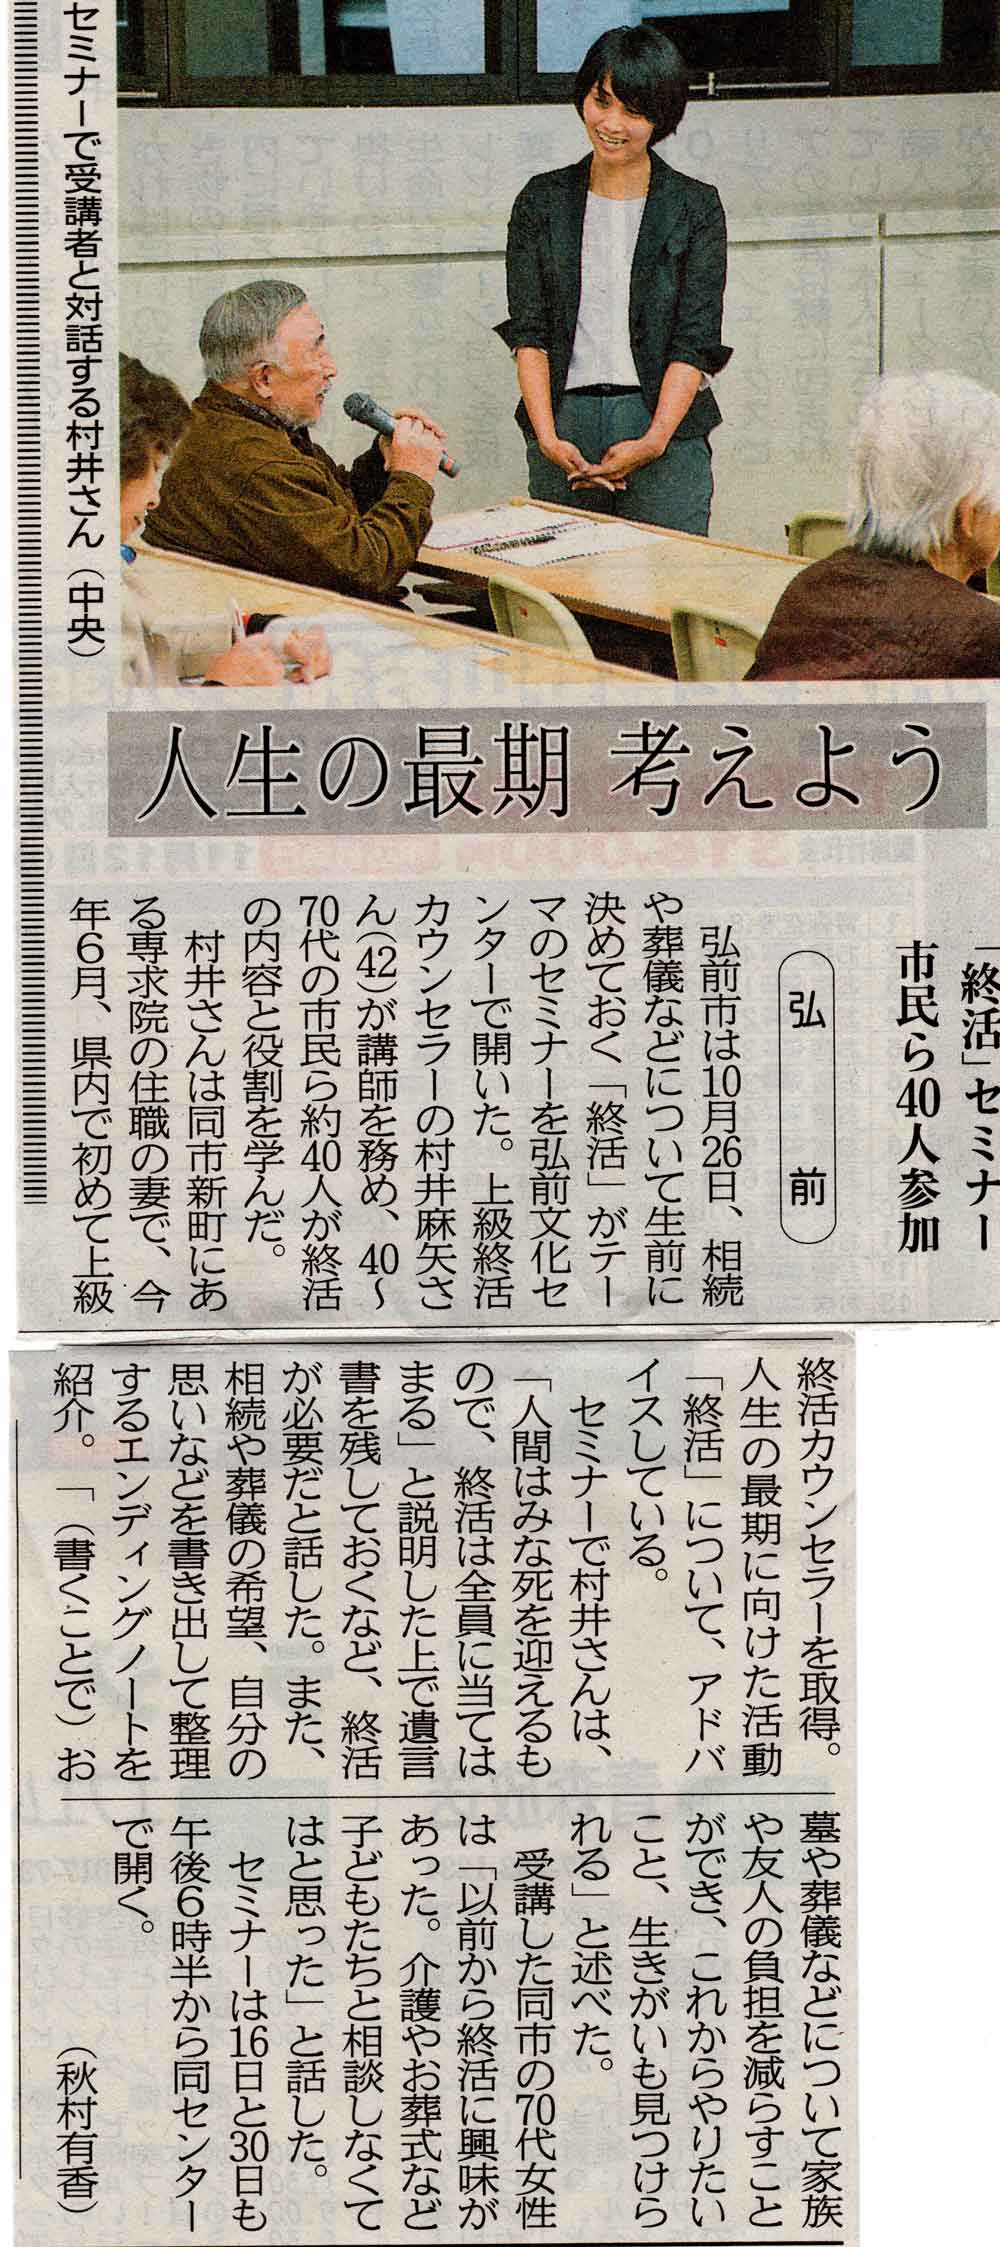 終活セミナーが東奥日報に掲載されました。